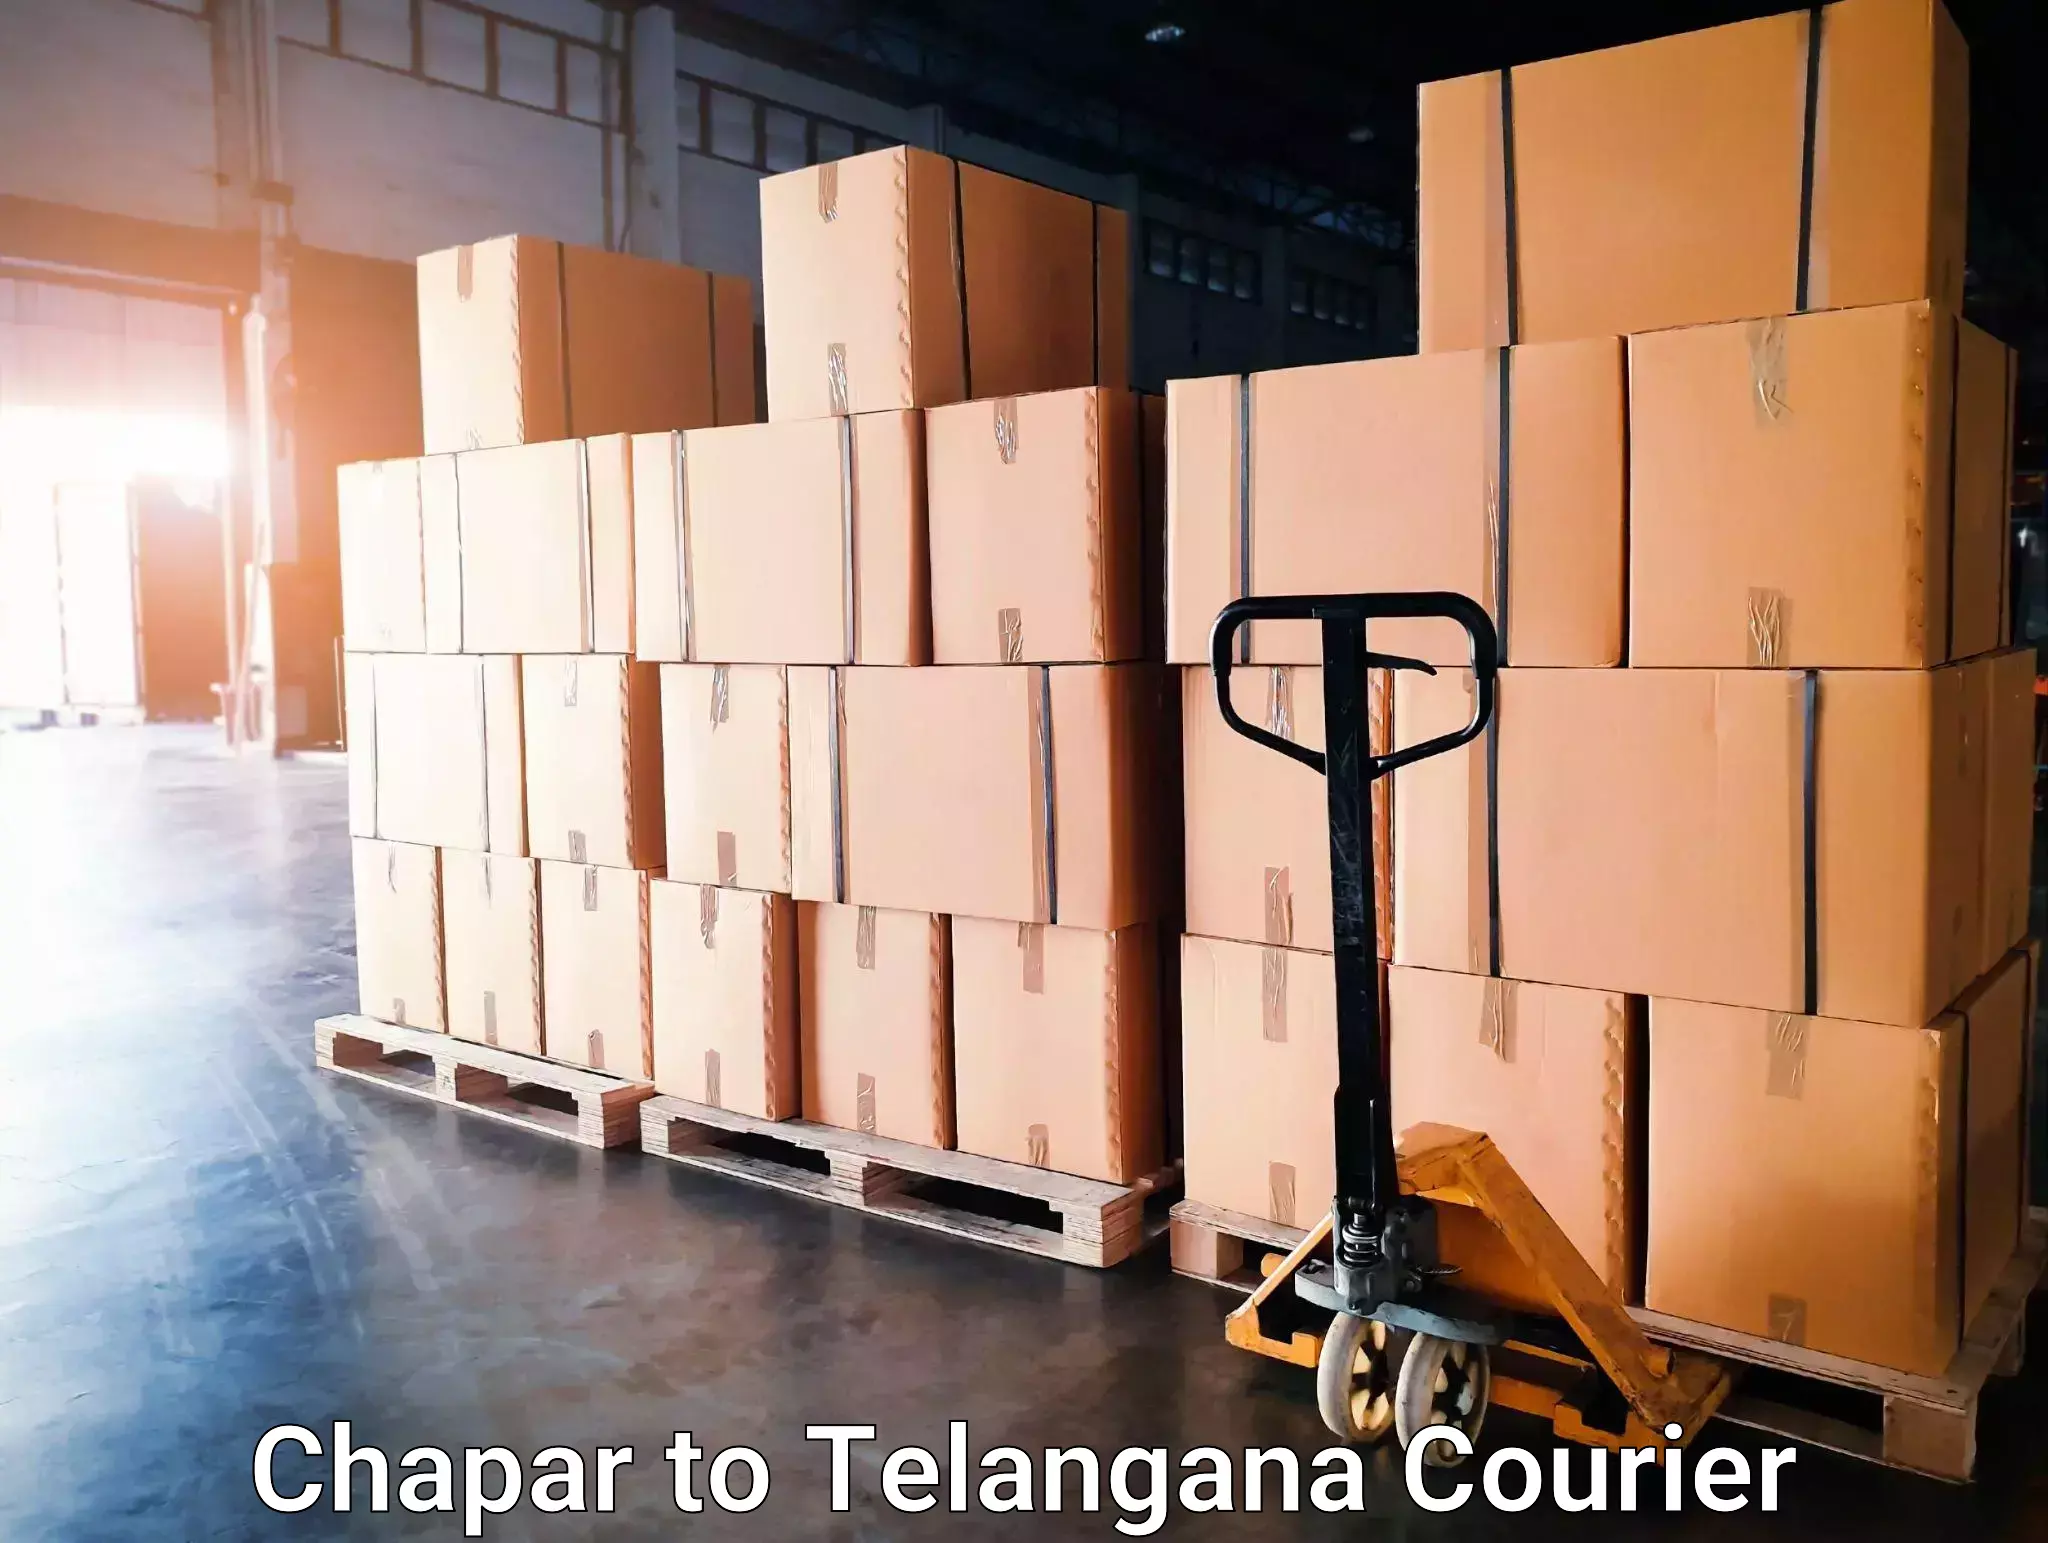 Courier service comparison Chapar to Bonakal